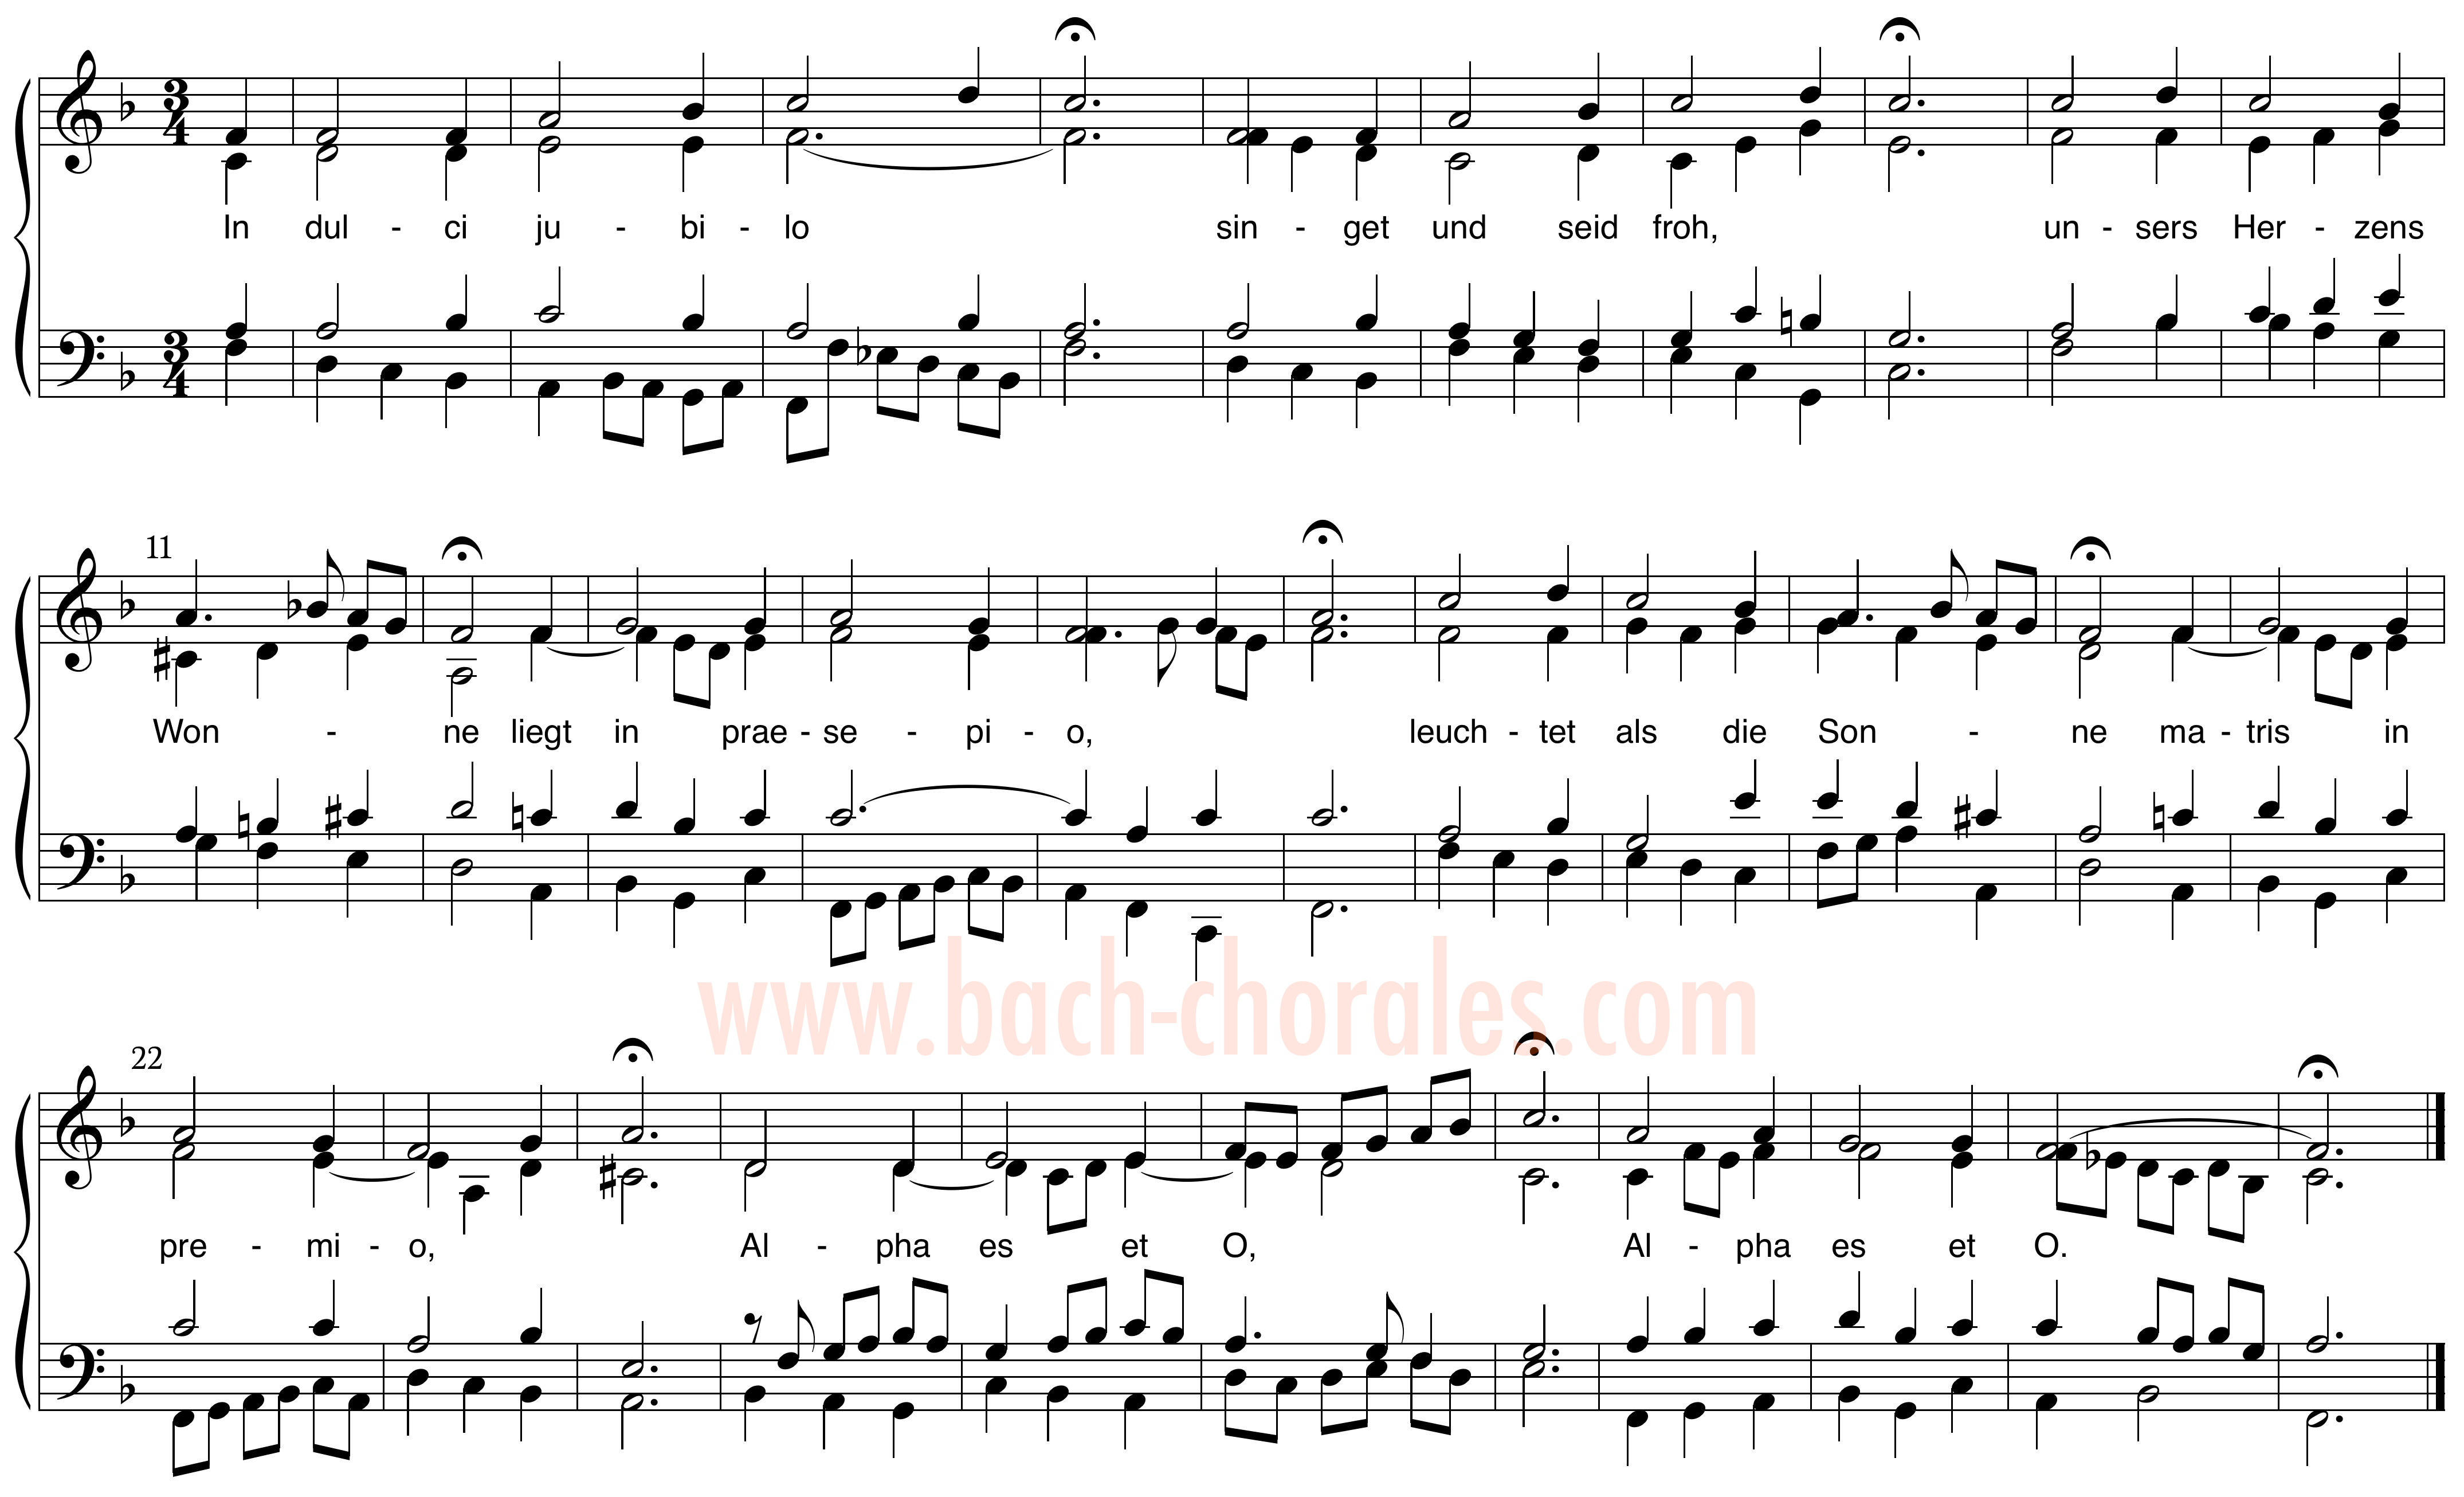 notenbeeld BWV 368 op https://www.bach-chorales.com/